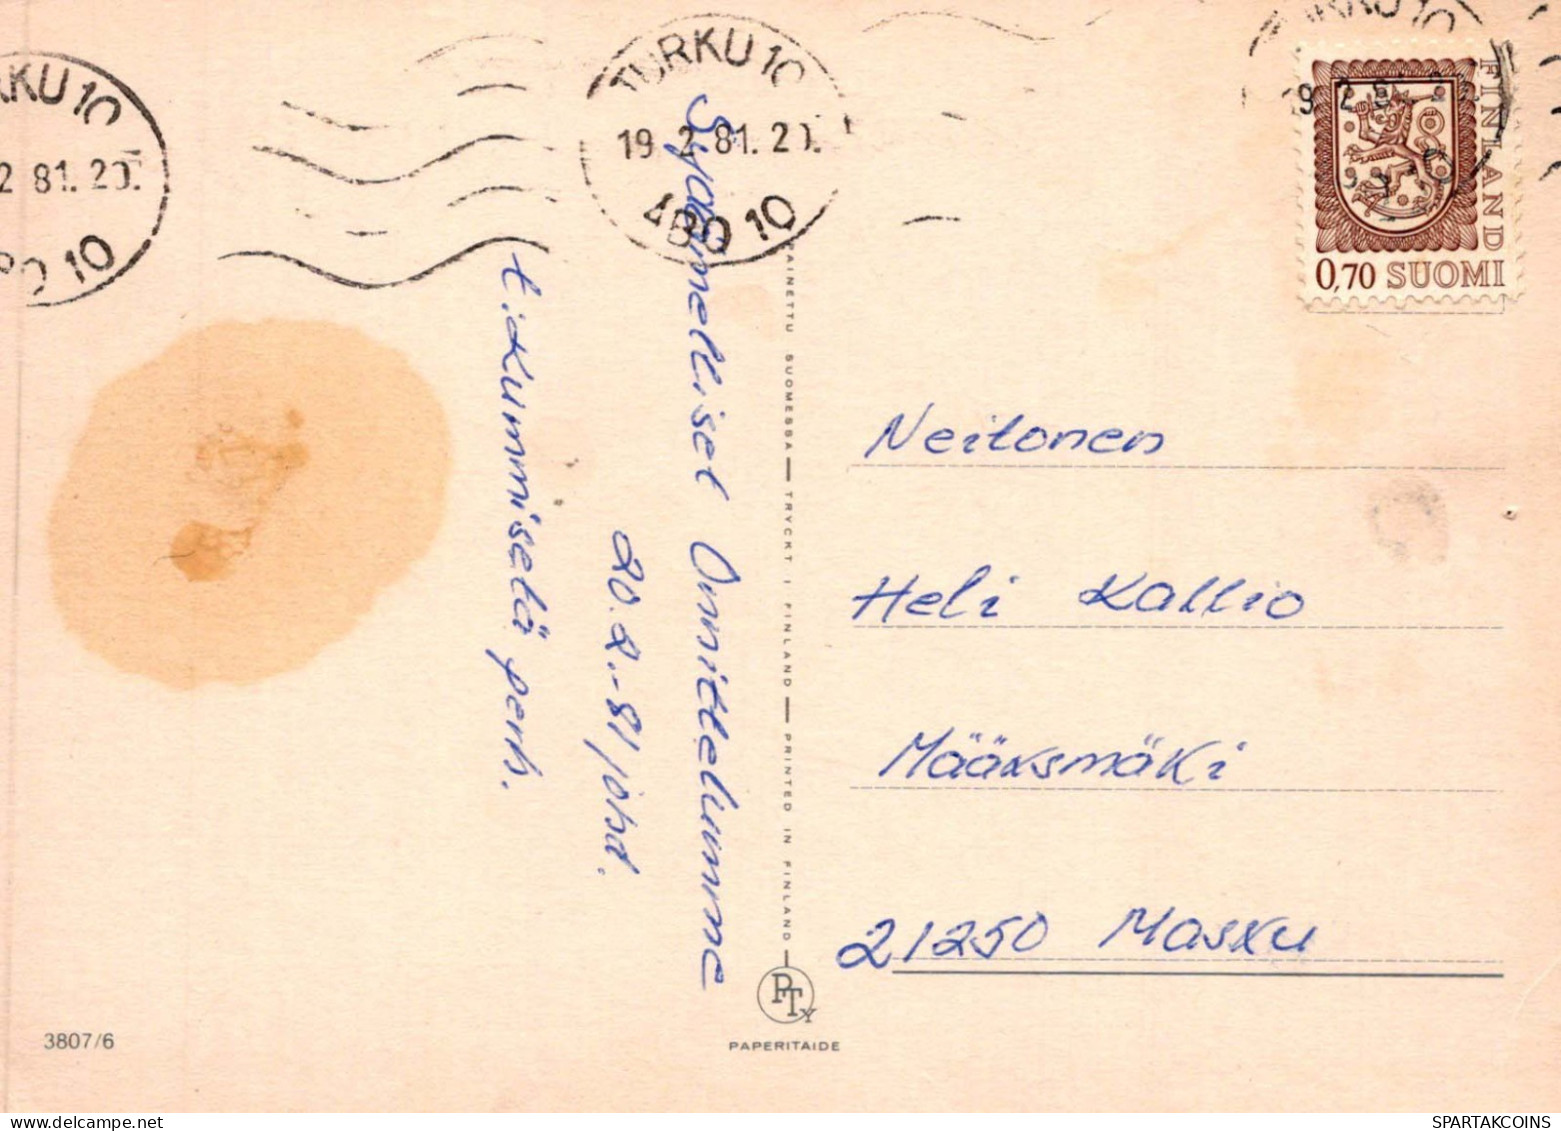 KINDER KINDER Szene S Landschafts Vintage Postal CPSM #PBT423.DE - Escenas & Paisajes